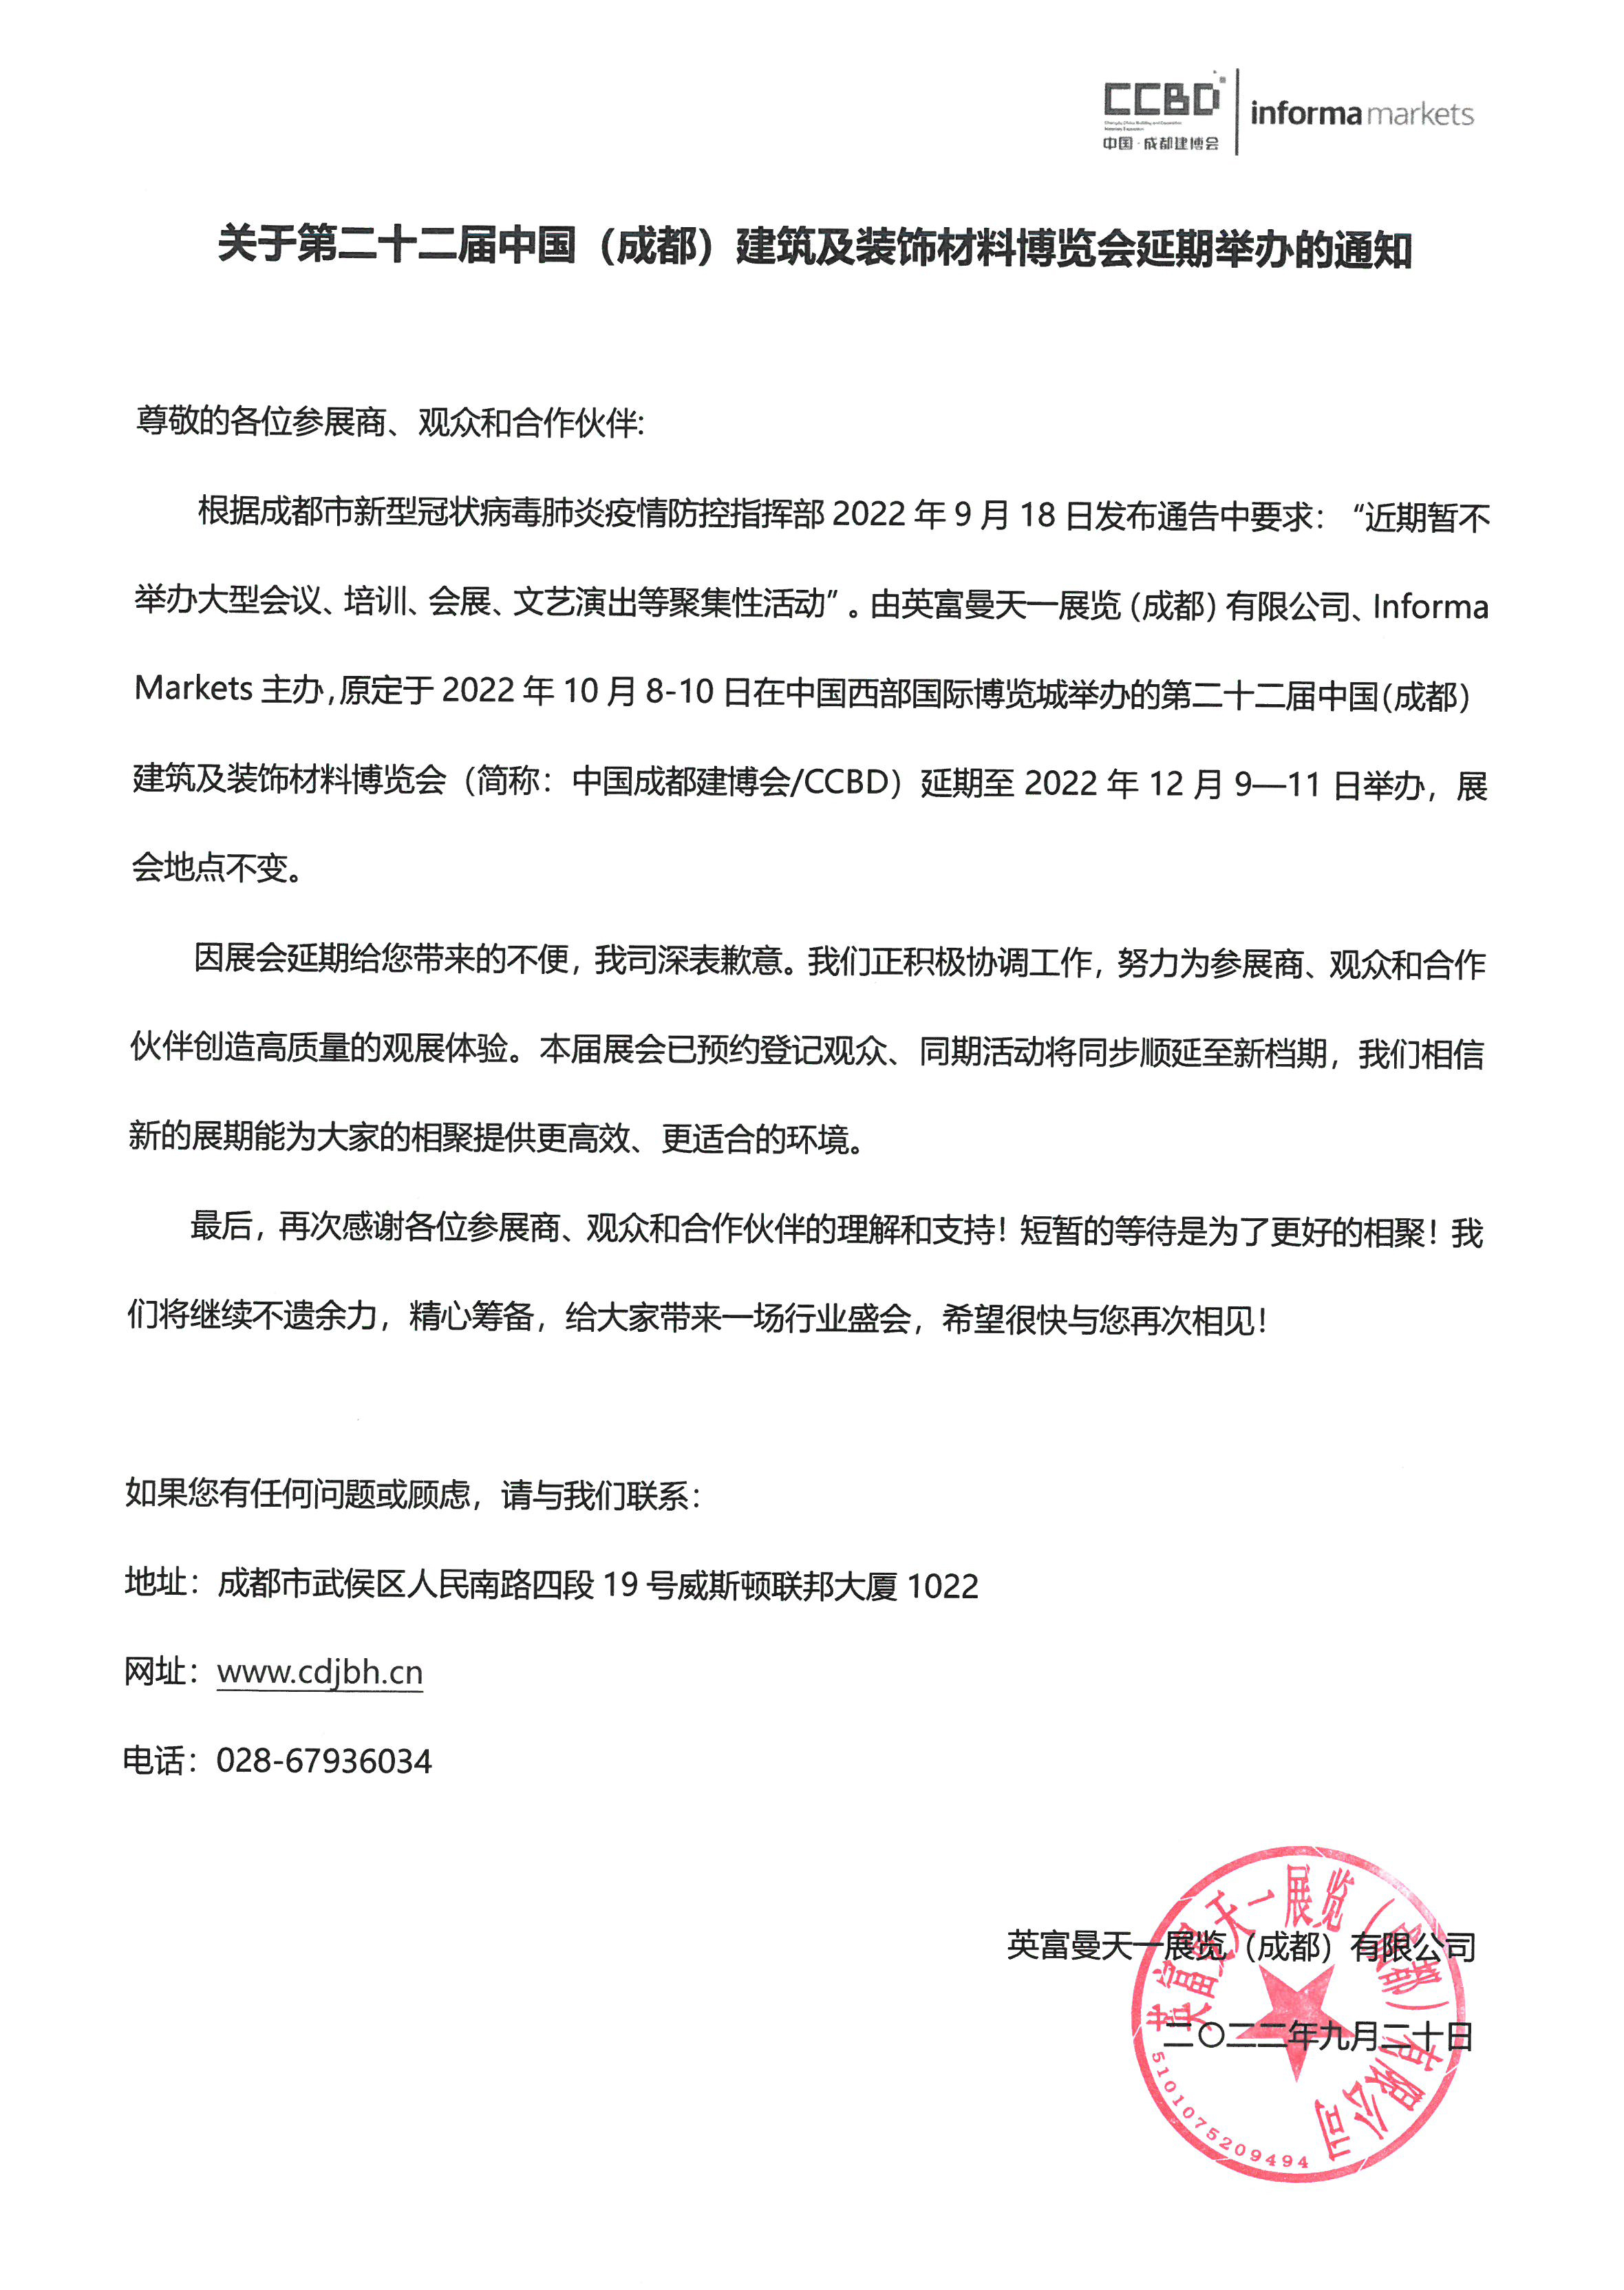 关于第二十二届中国成都建博会延期至12月9―11日的通知(图2)